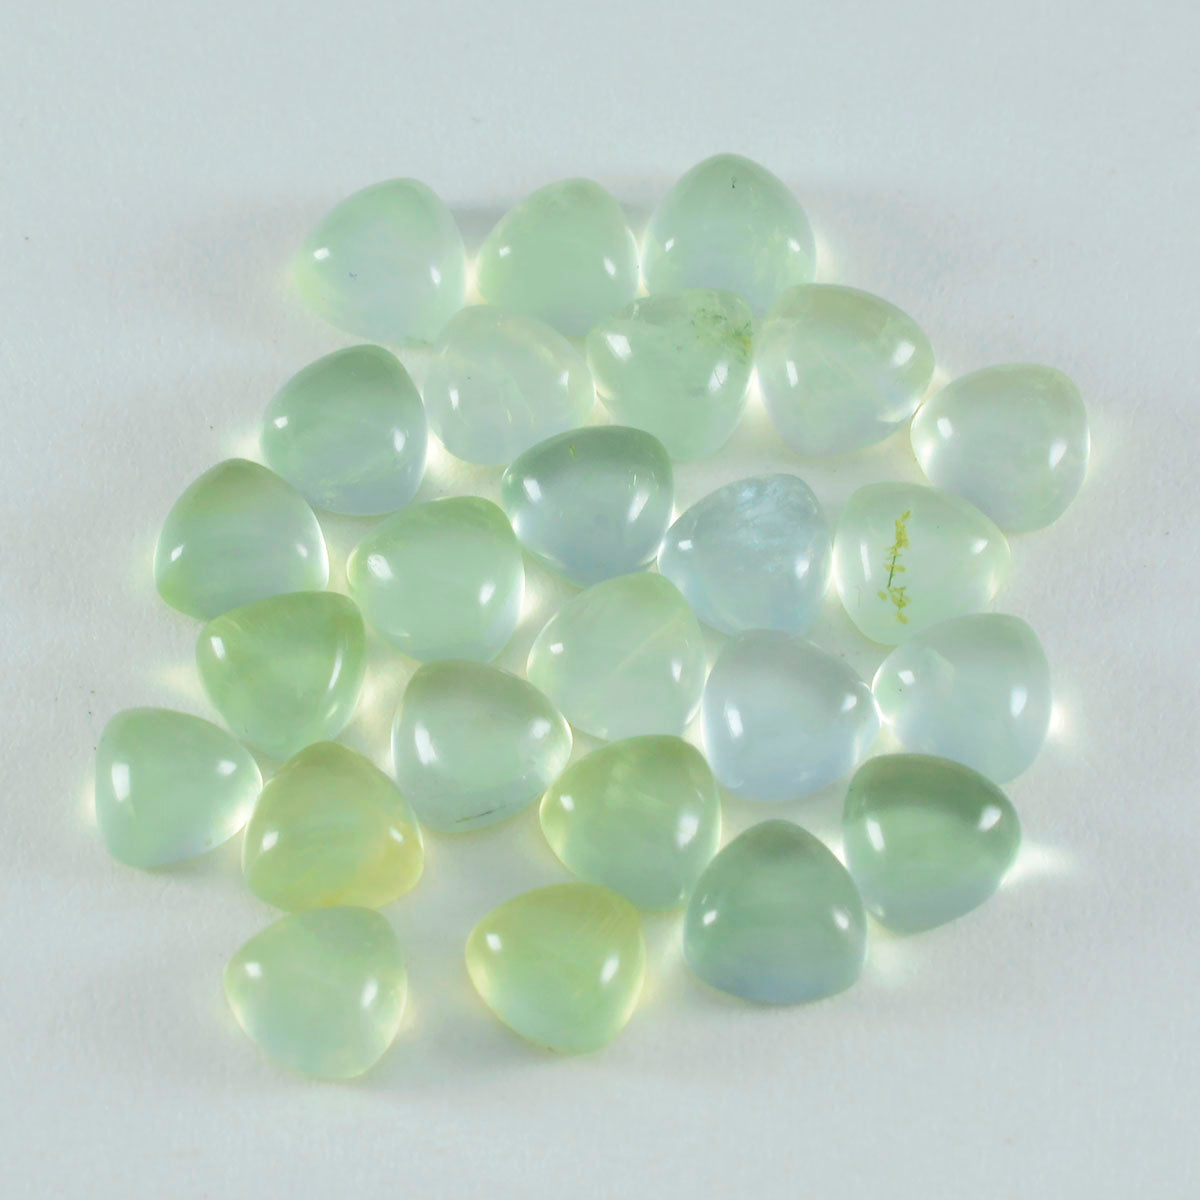 riyogems 1шт зеленый пренит кабошон 7x7 мм форма триллиона драгоценный камень удивительного качества